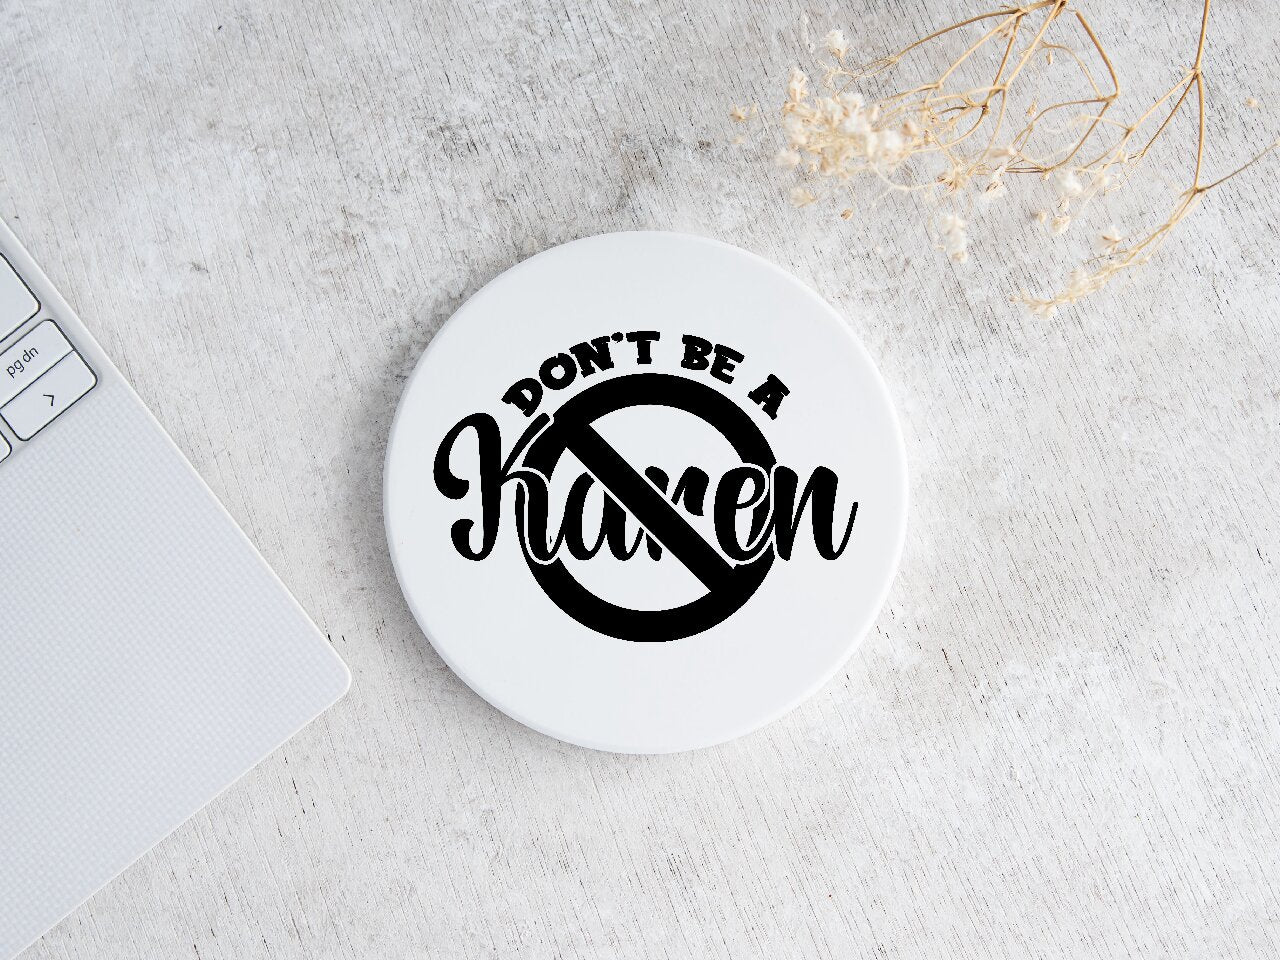 Don't Be A Karen - Coaster